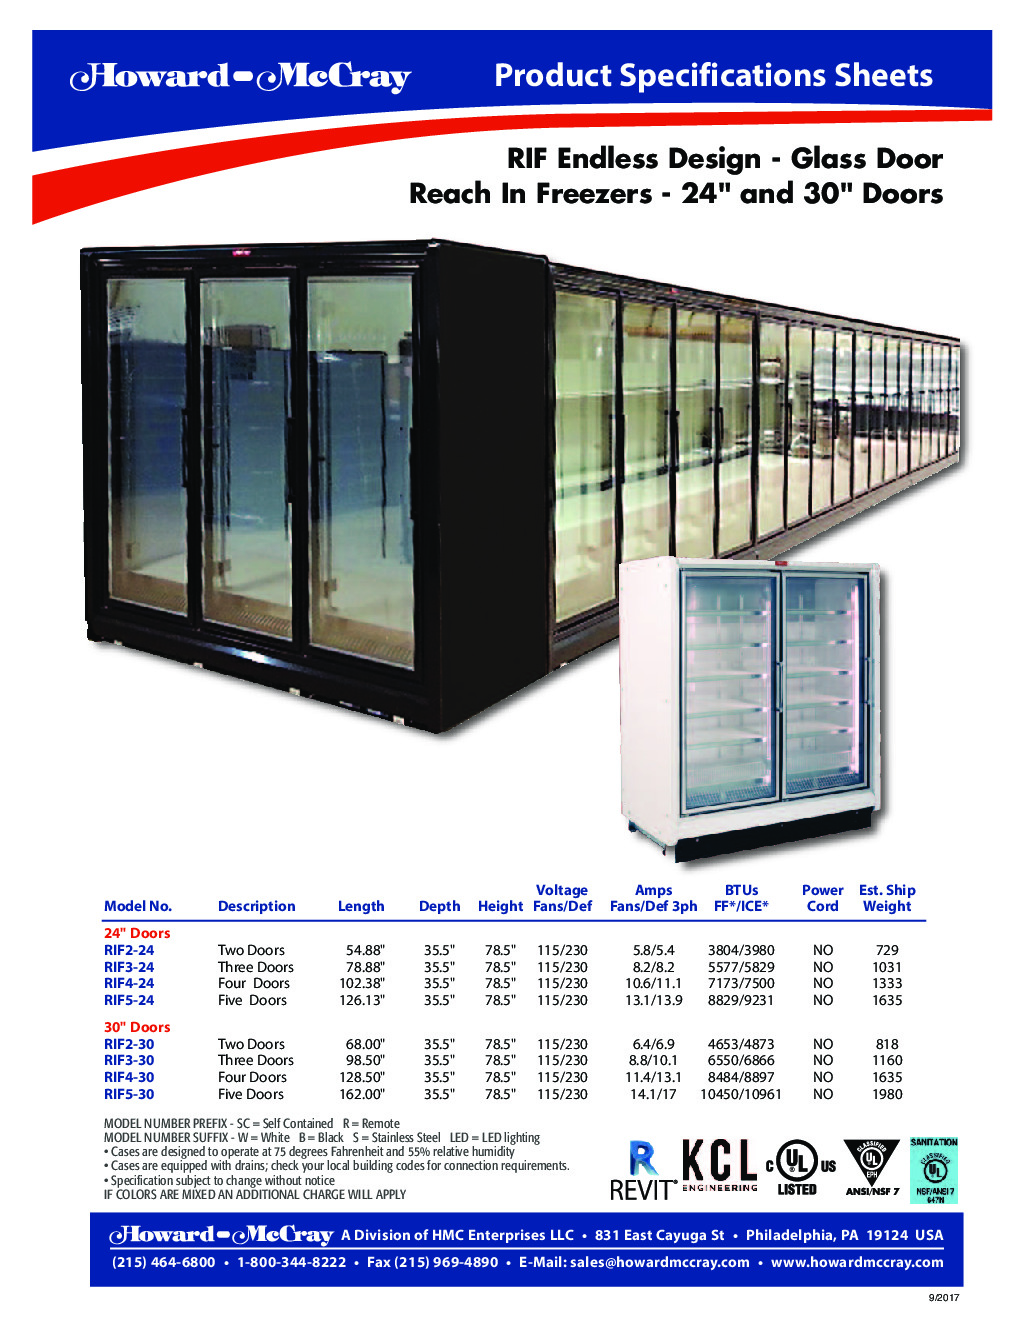 Howard-McCray RIF4-24-LED-S Merchandiser Freezer